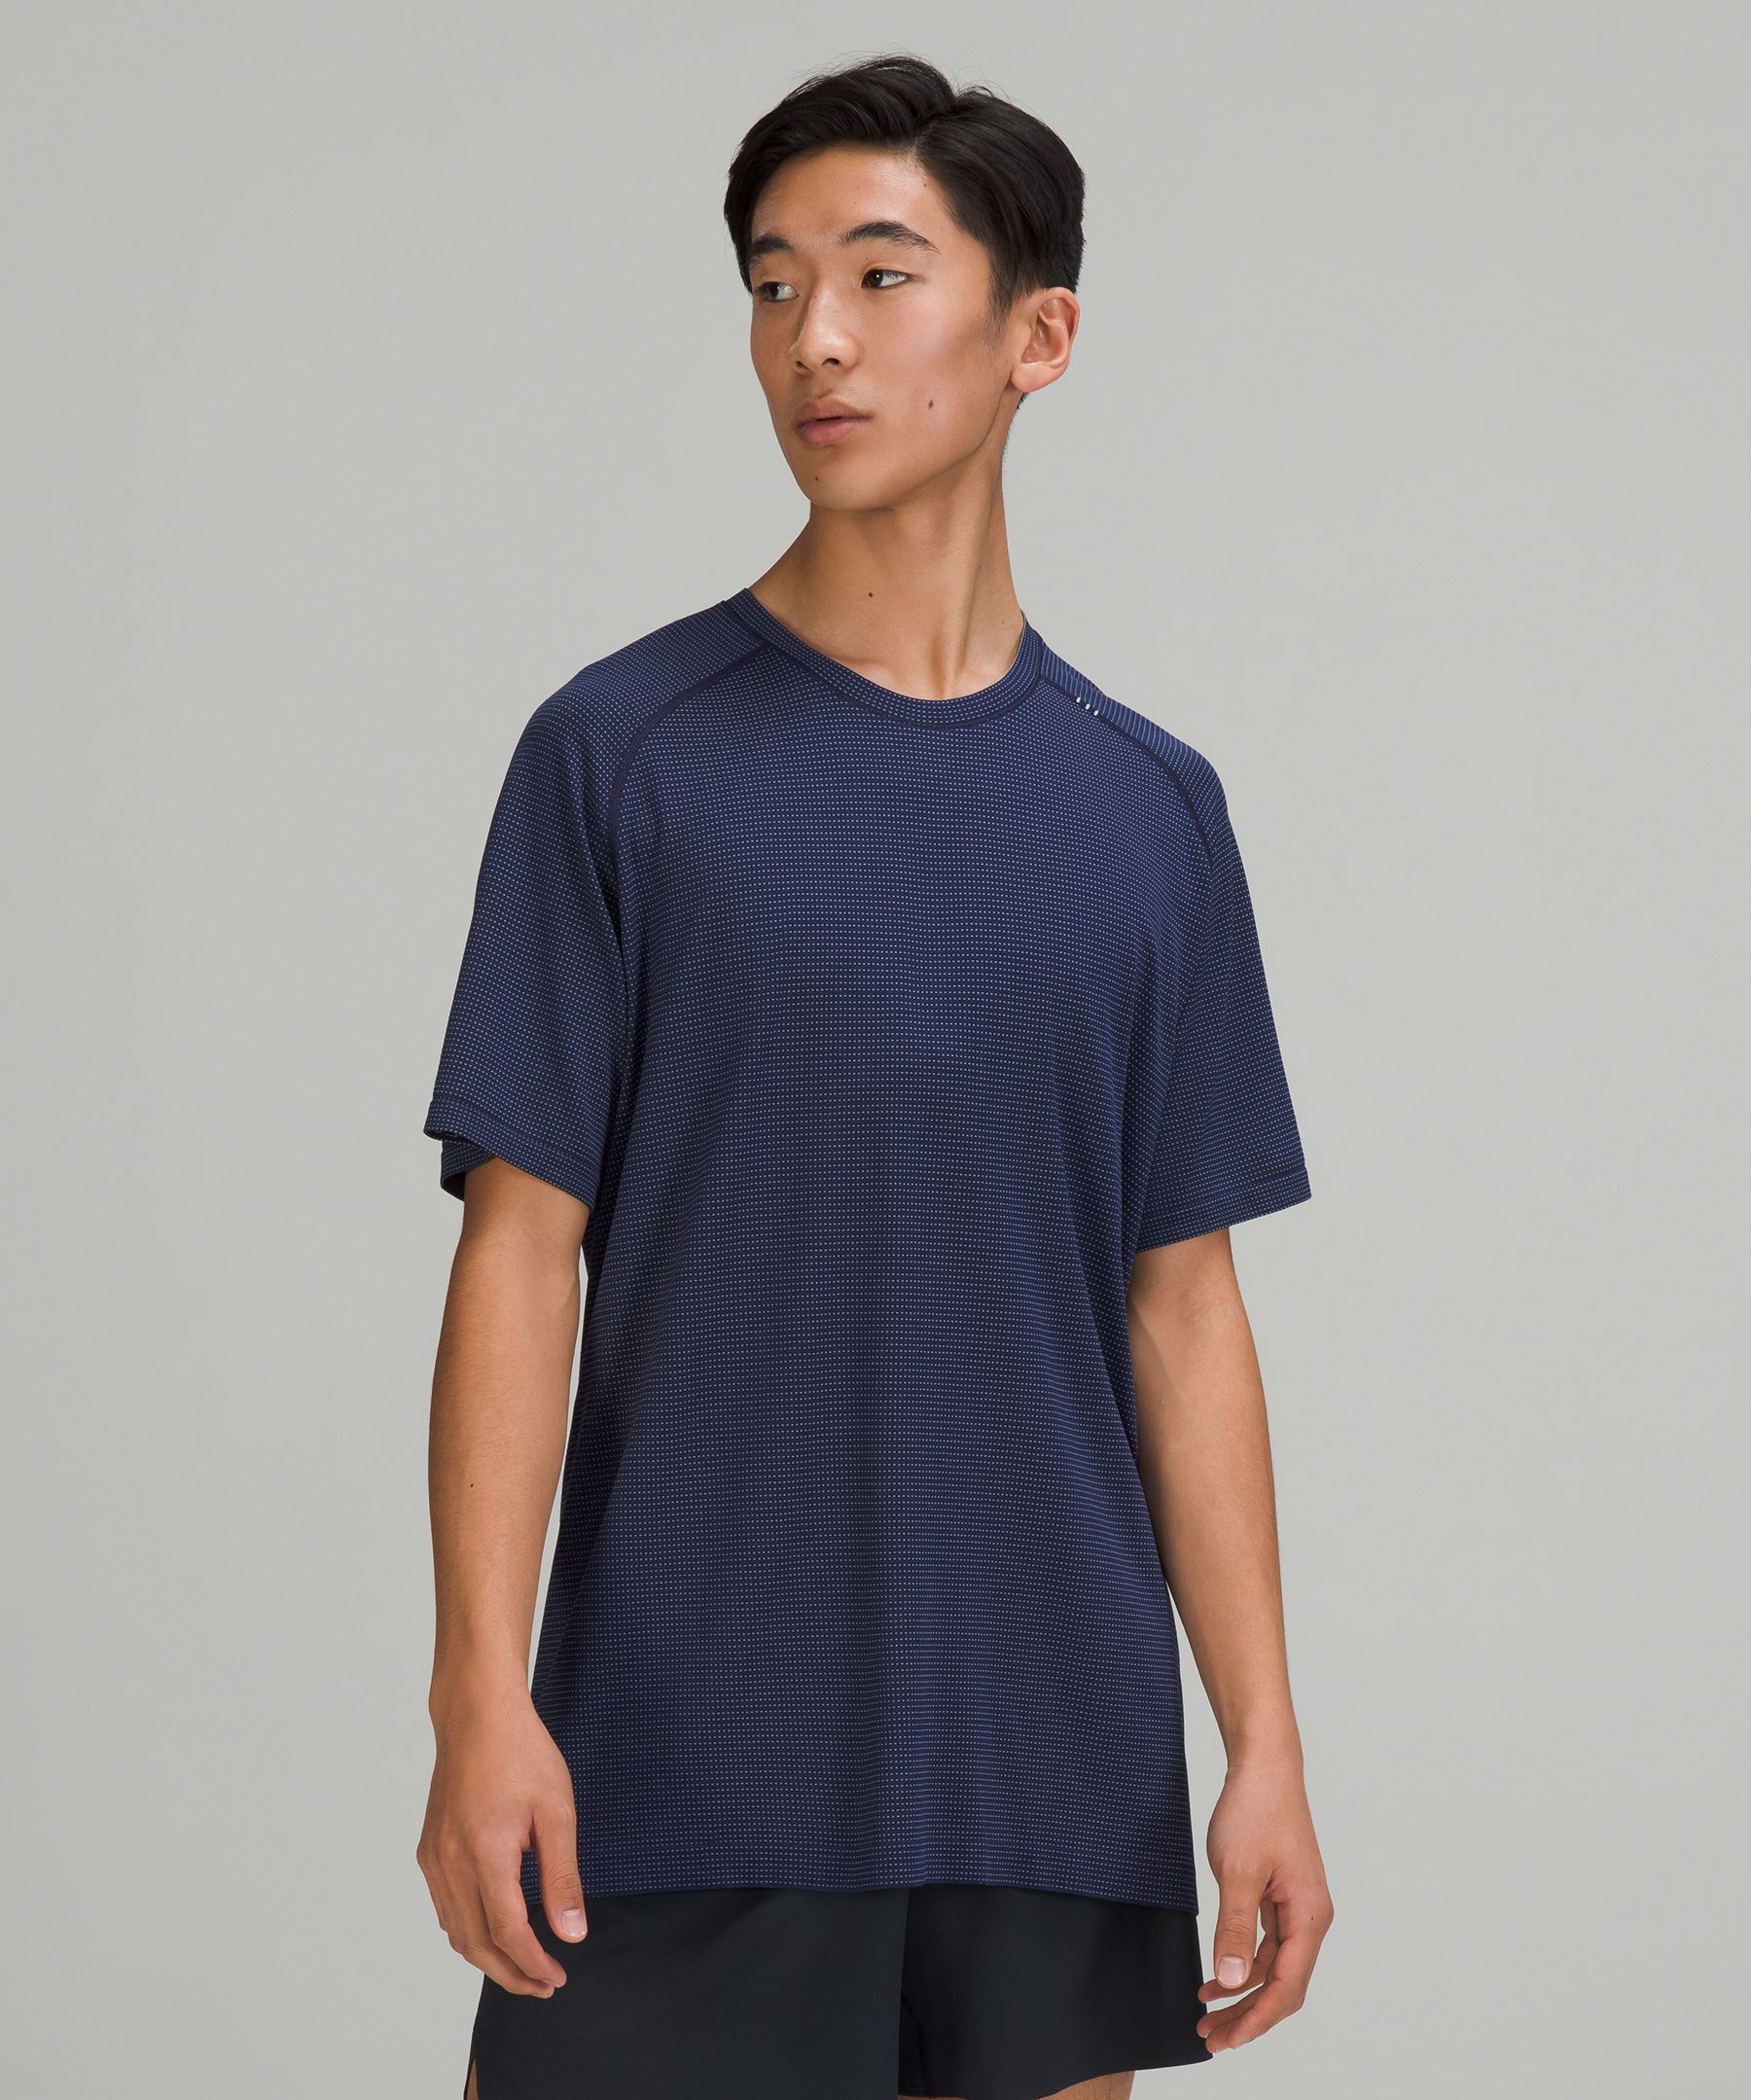 Lululemon Metal Vent Tech Short Sleeve Shirt 2.0 In Blue